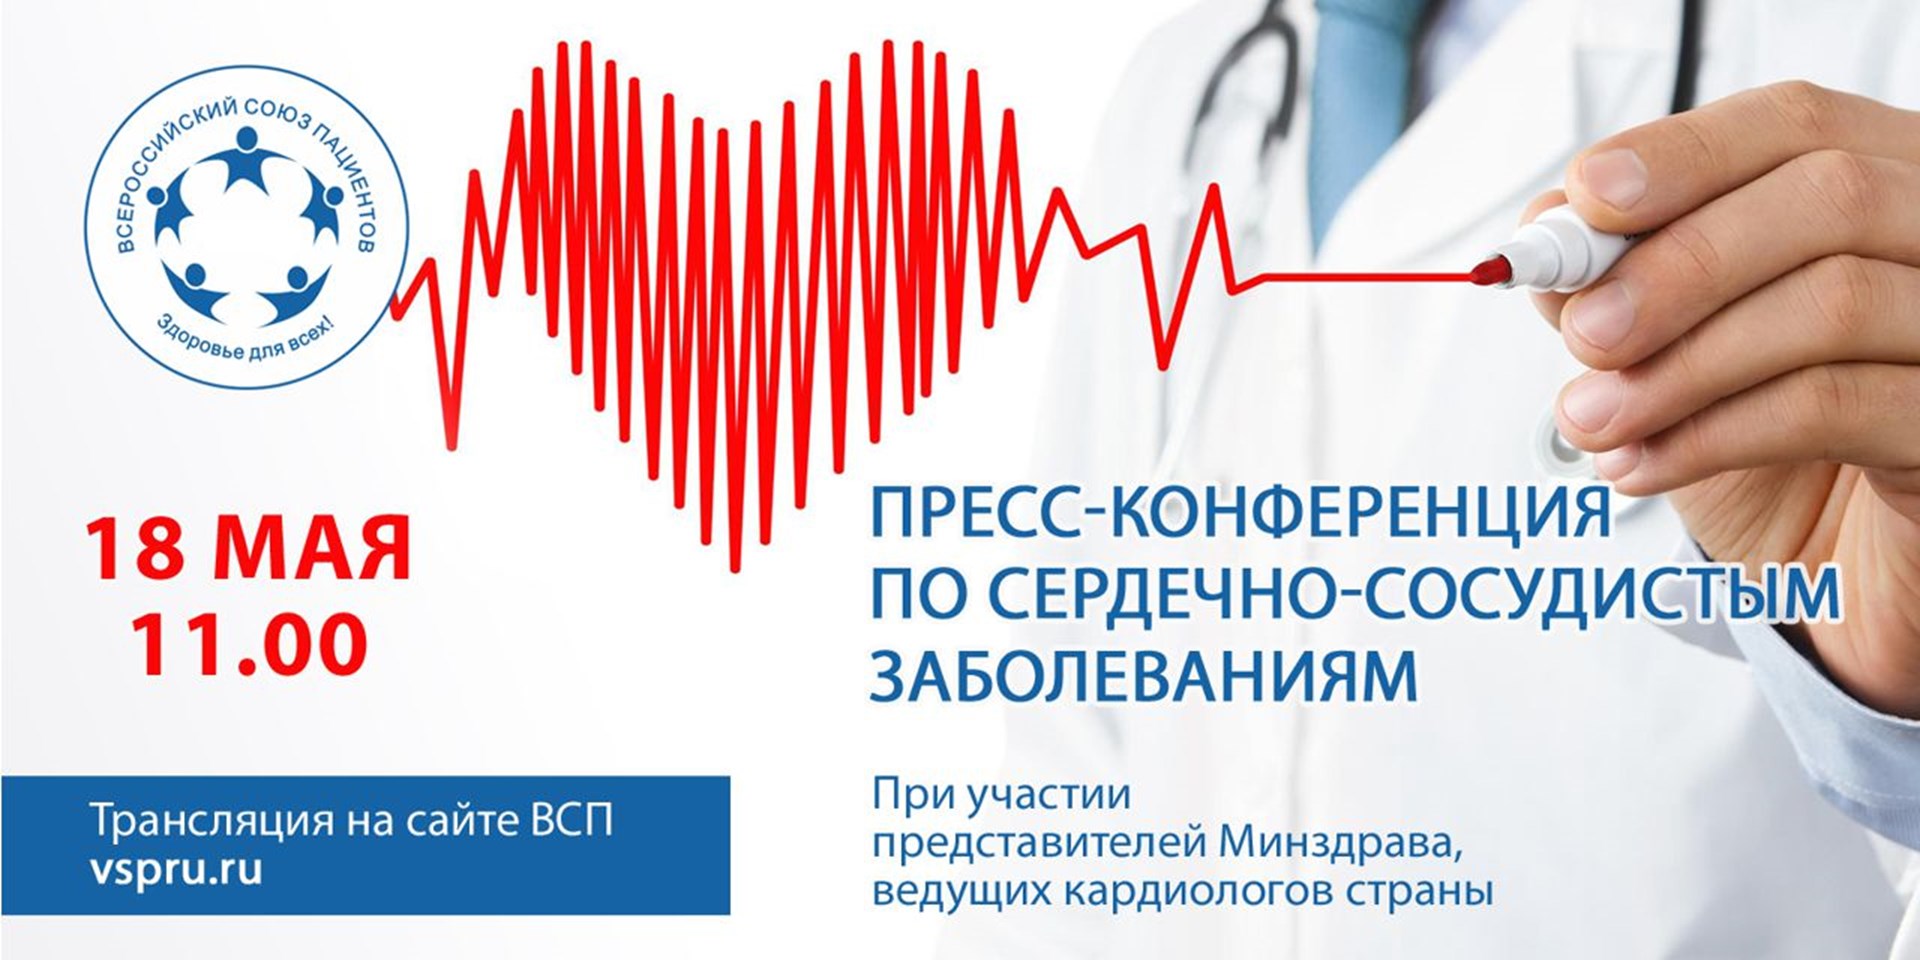 17.05.2021 Москва. Сердечно-сосудистые заболевания: лечение и профилактика в период пандемии